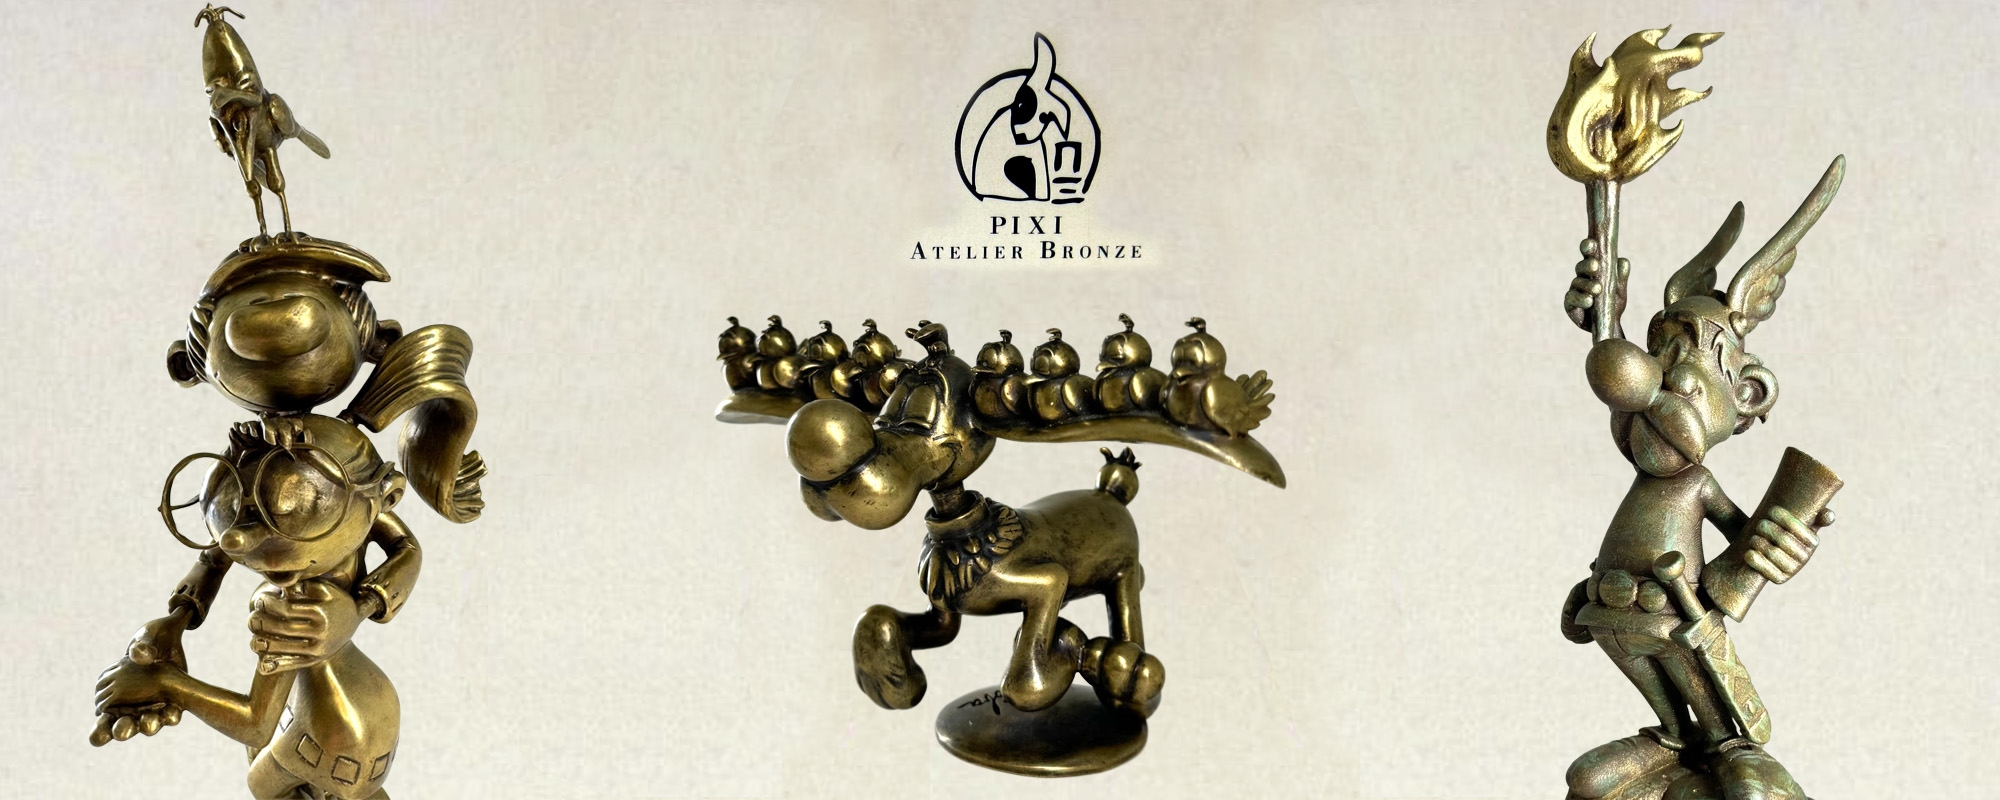 3 magnifiques créations de l'atelier bronze de Pixi cette année